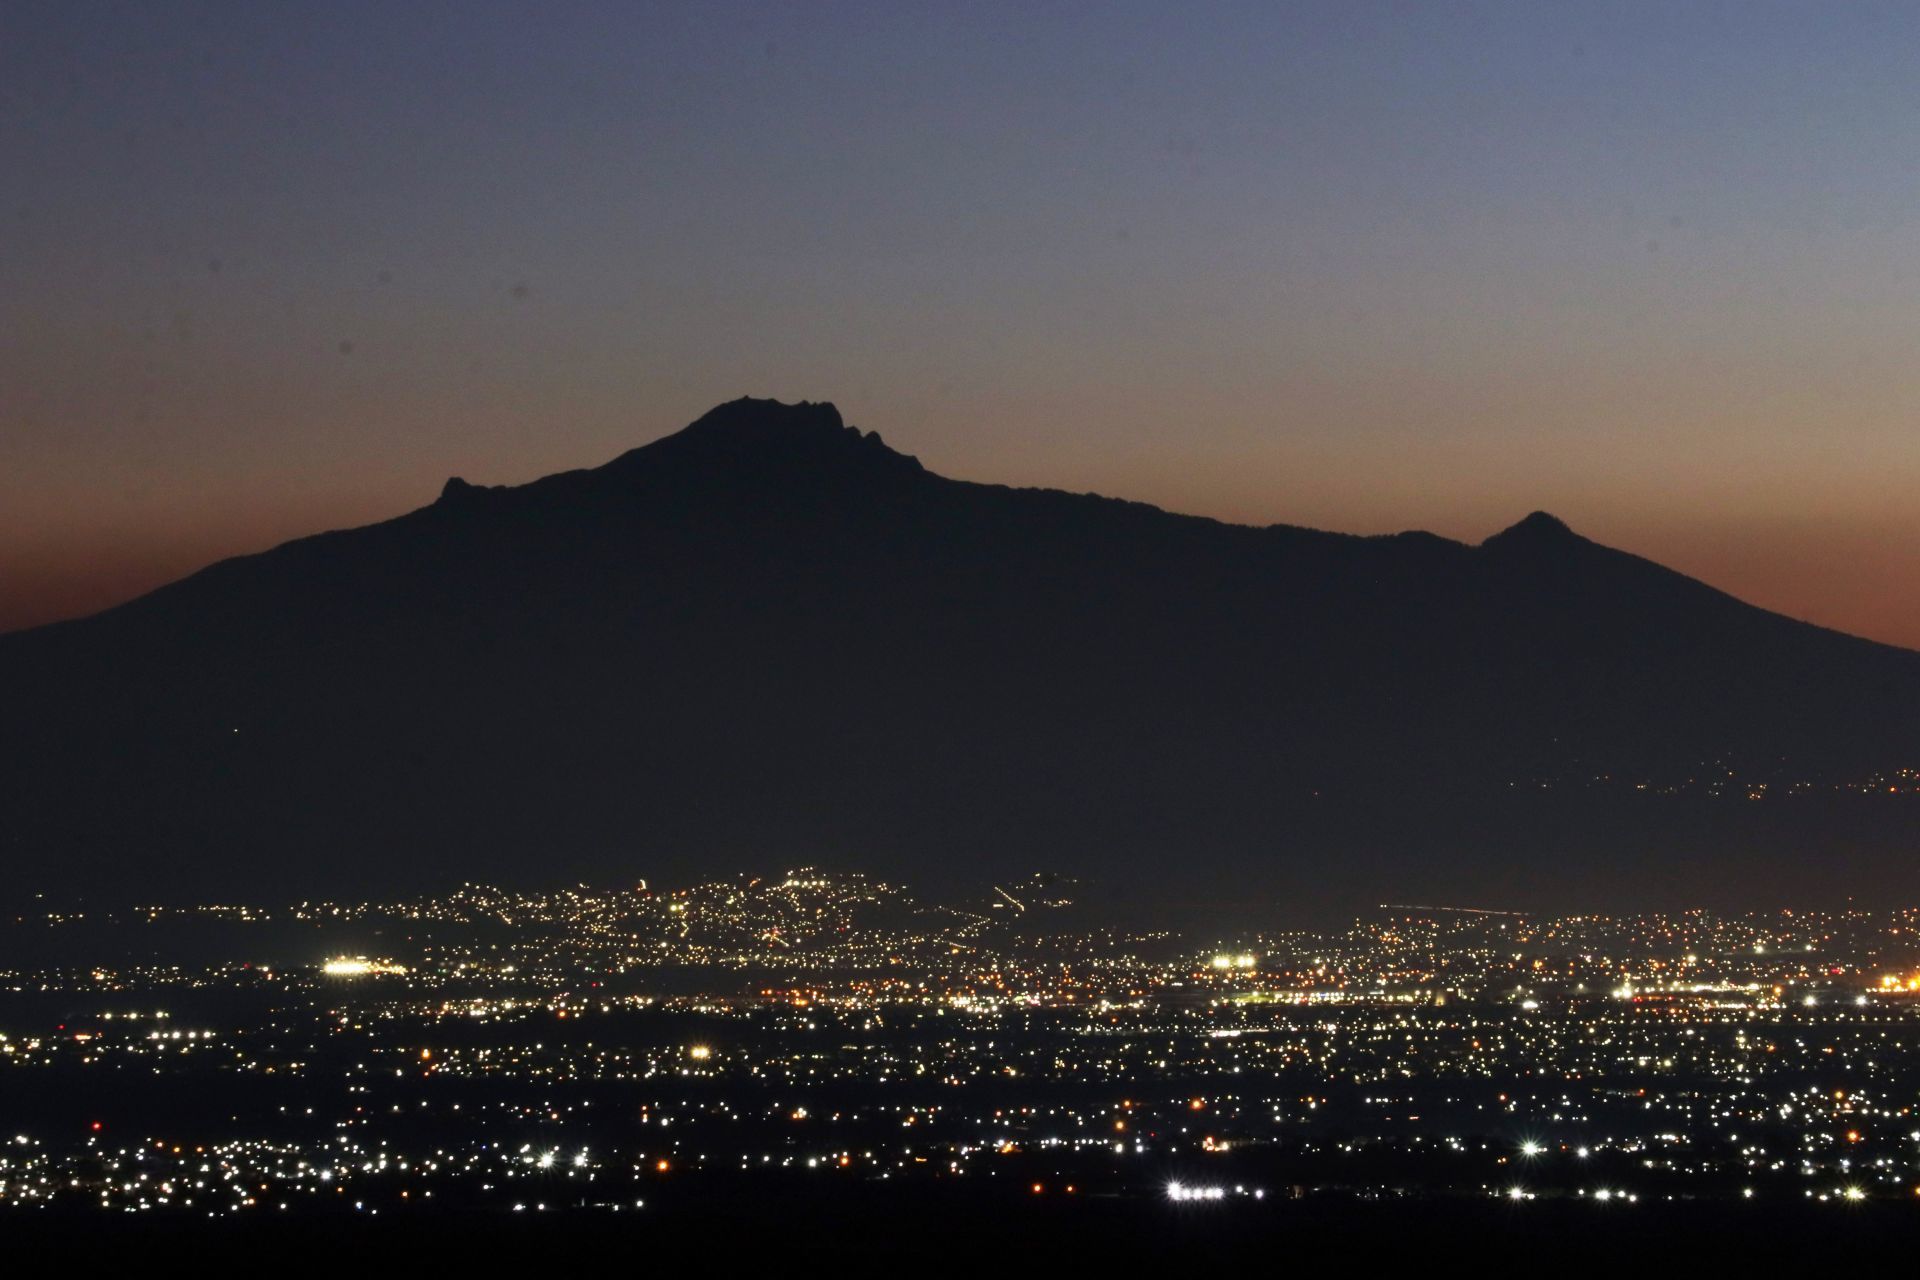 La aurora del amanecer delinea la figura de La Malinche, el Pico de Orizaba e ilumina la ciudad de Puebla. (FOTO: MARGARITO PÉREZ RETANA/CUARTOSCURO.COM)